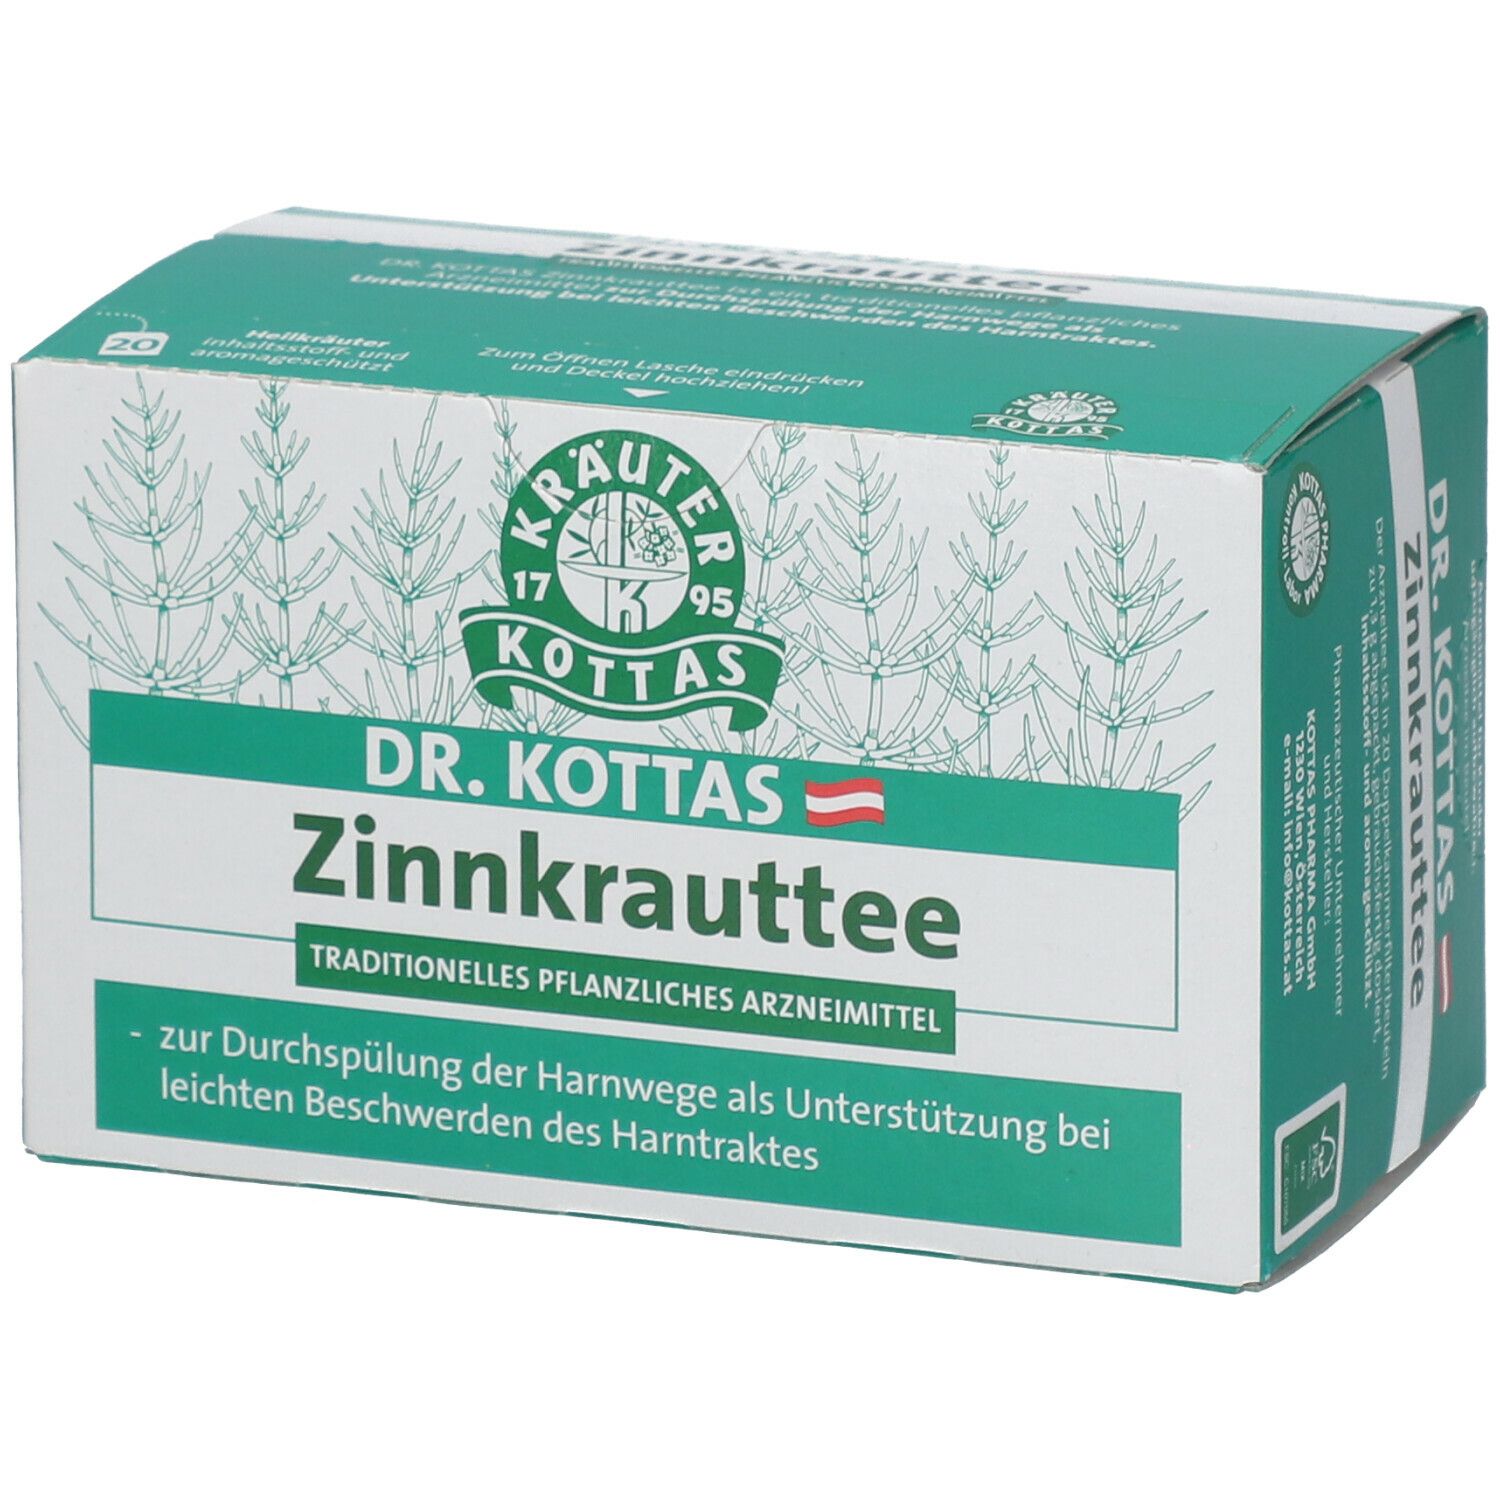 Dr. Kottas Zinnkrauttee